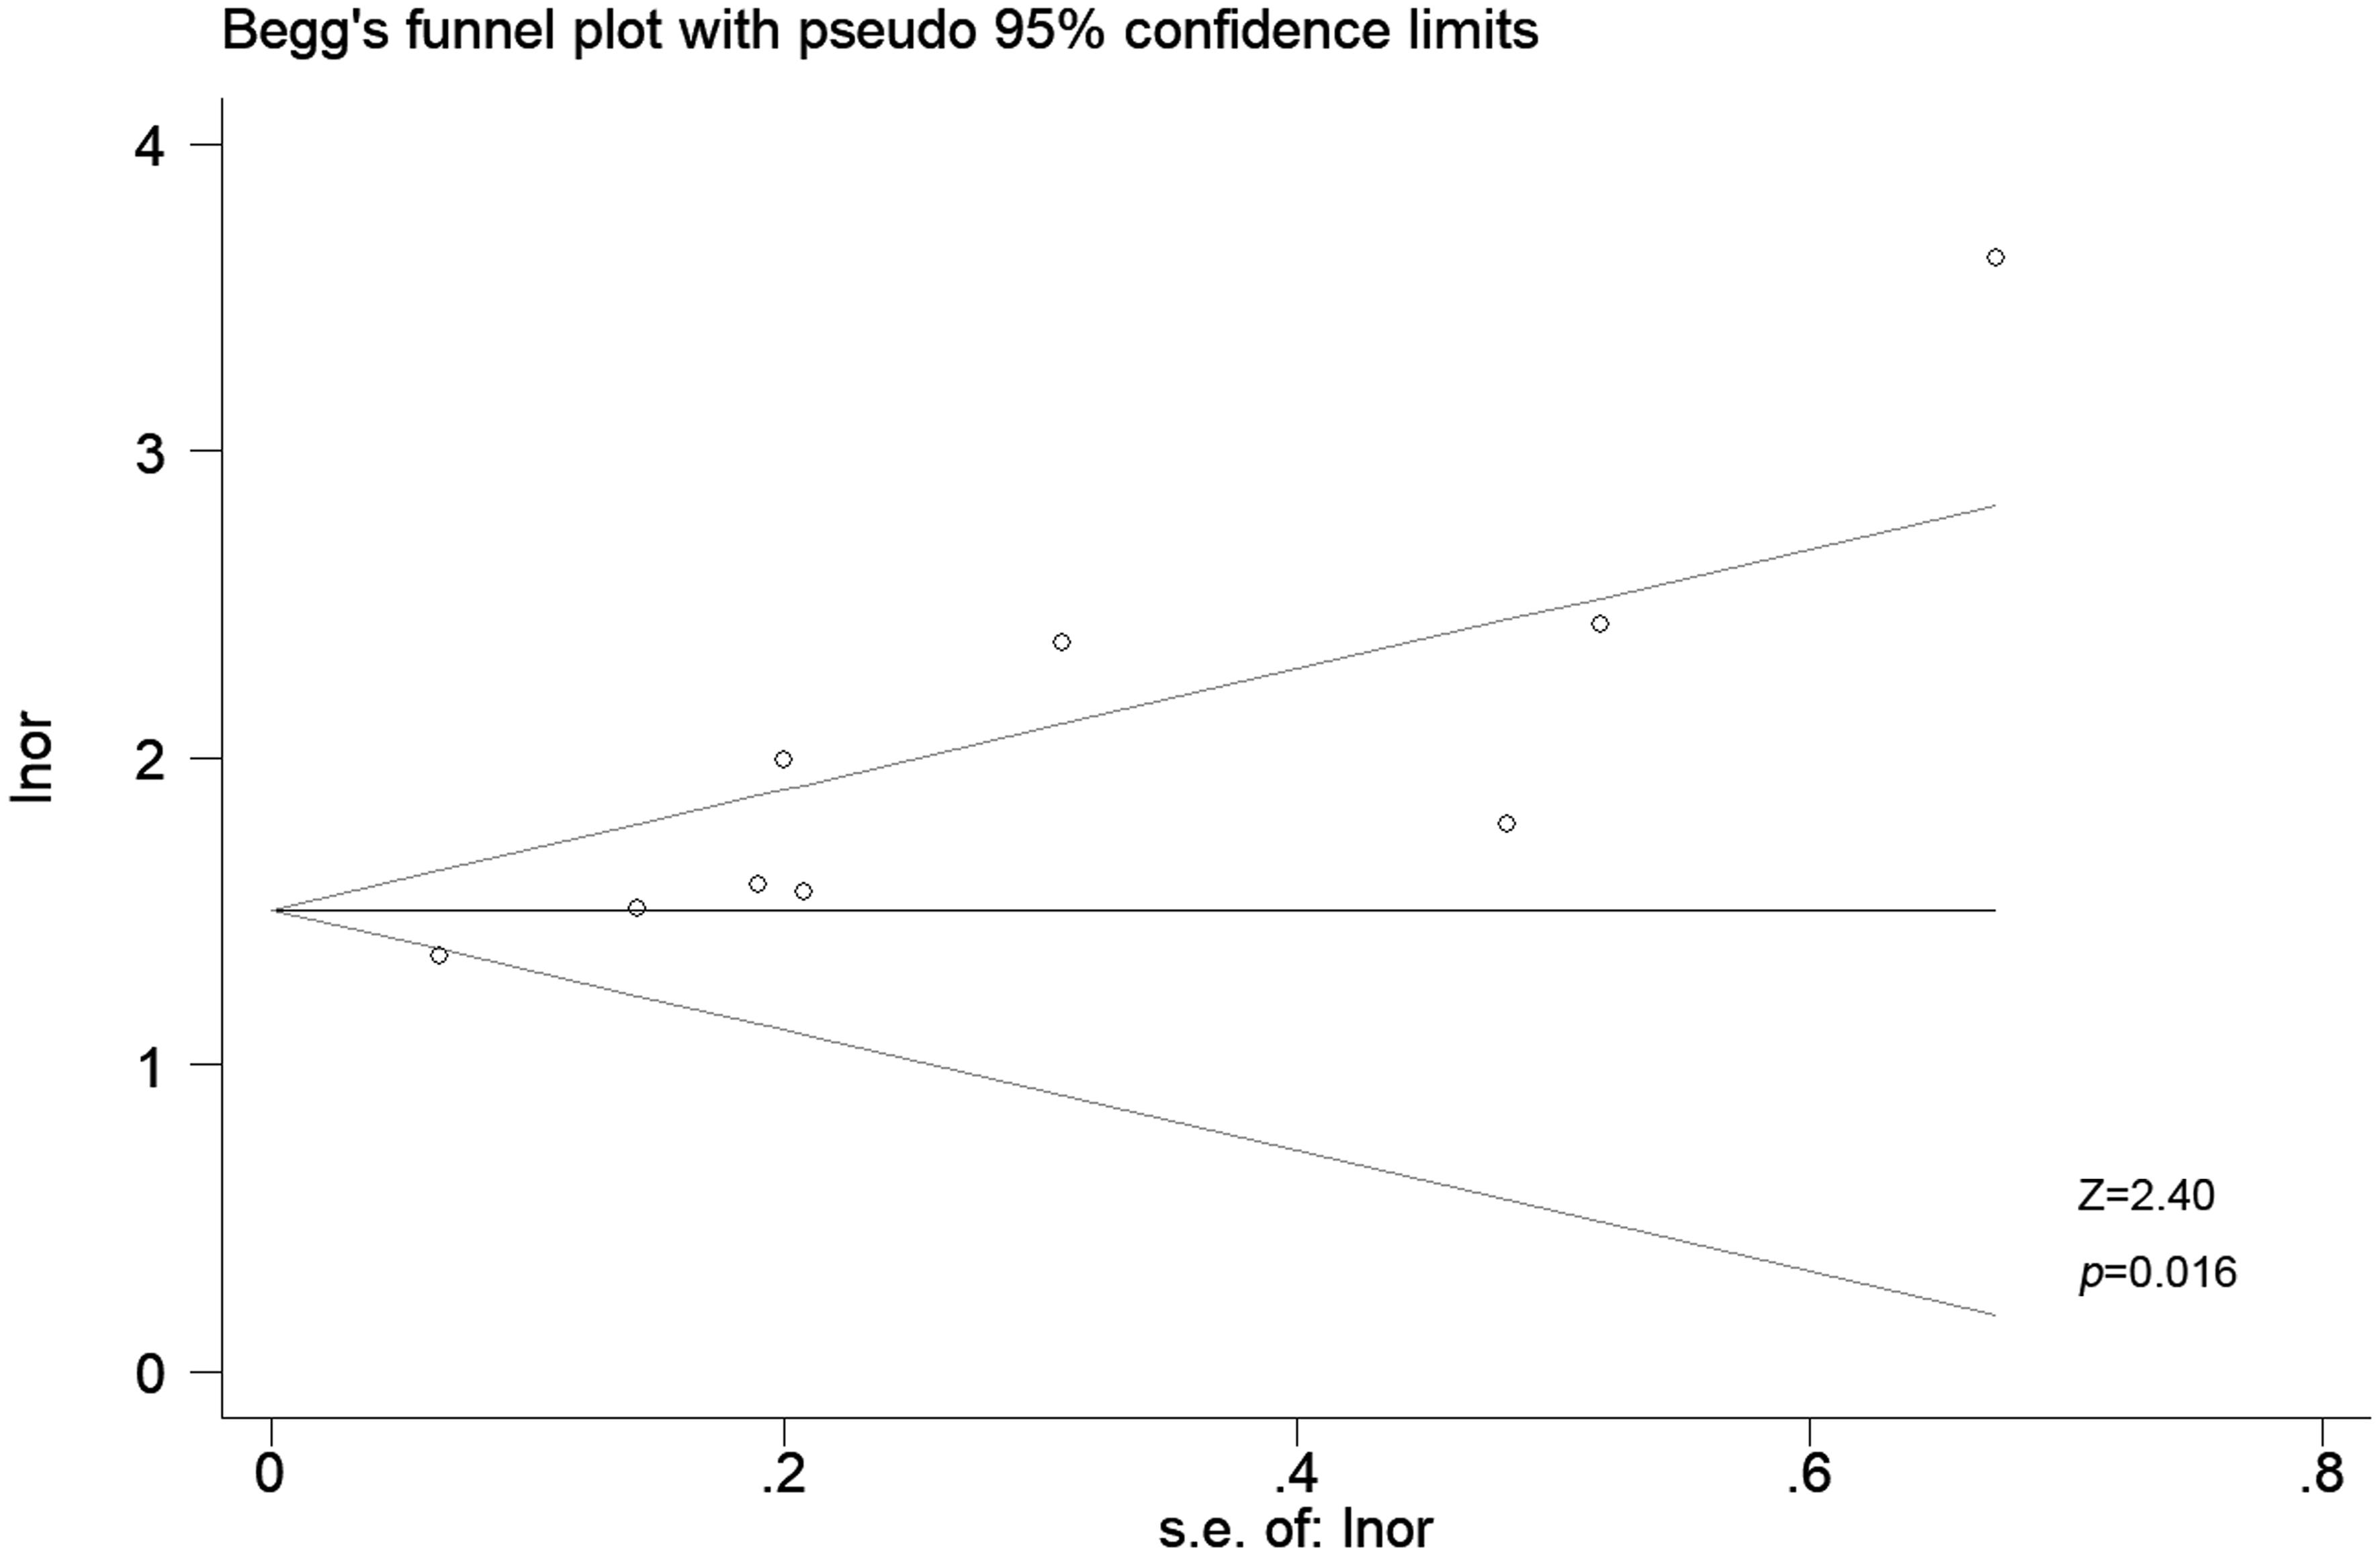 Begg’s funnel plot for publication bias.